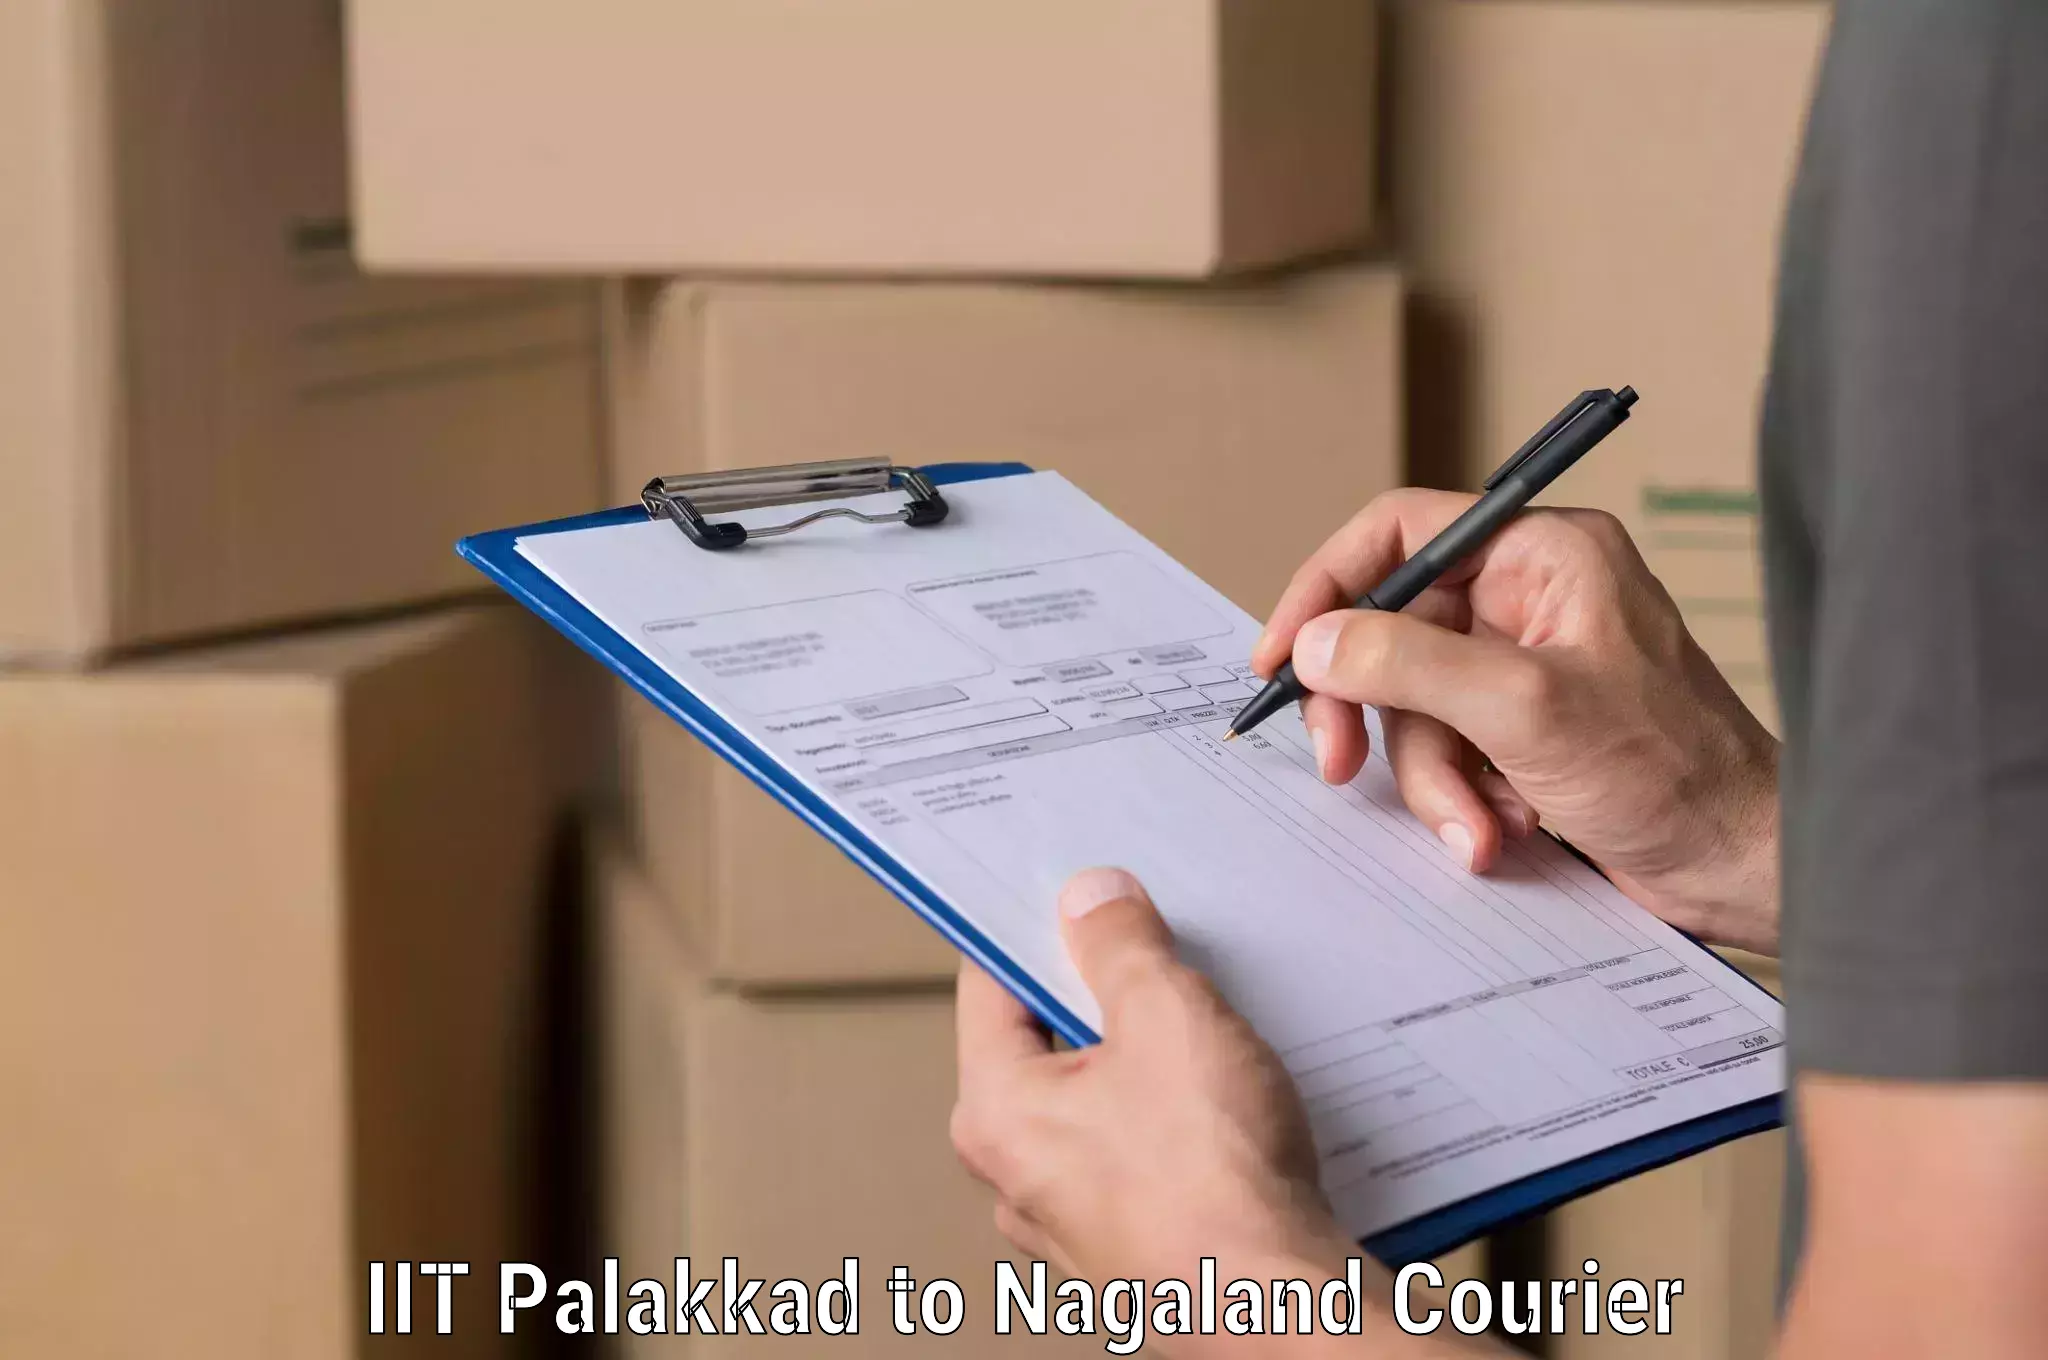 Express logistics providers IIT Palakkad to Longleng